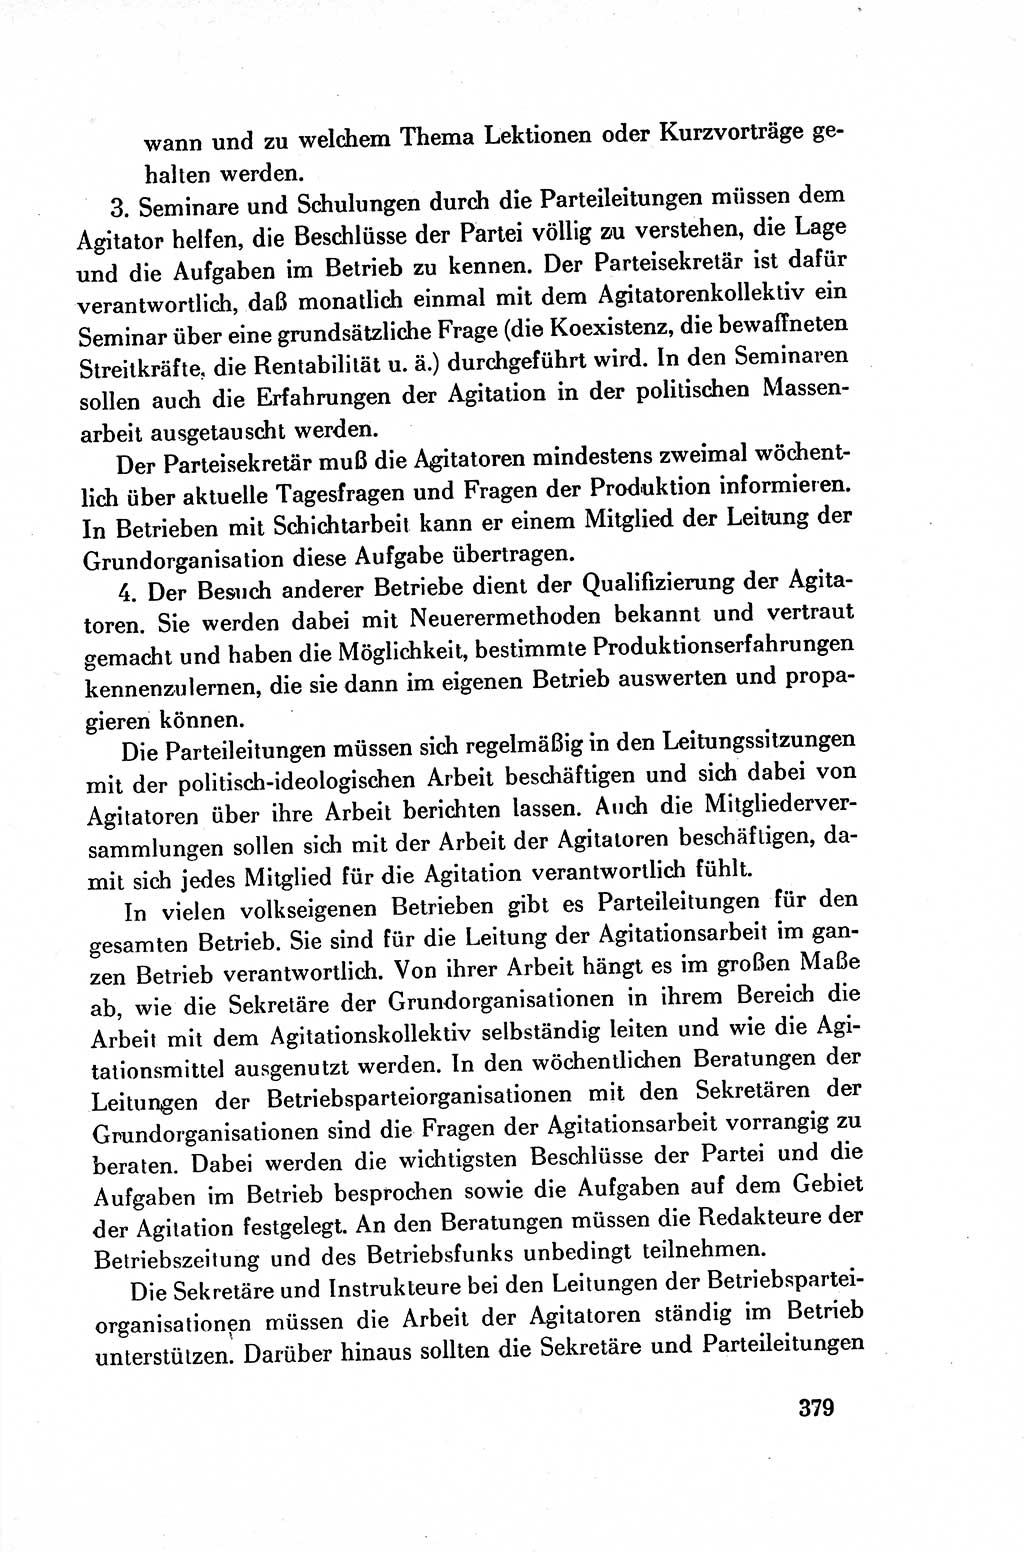 Dokumente der Sozialistischen Einheitspartei Deutschlands (SED) [Deutsche Demokratische Republik (DDR)] 1954-1955, Seite 379 (Dok. SED DDR 1954-1955, S. 379)